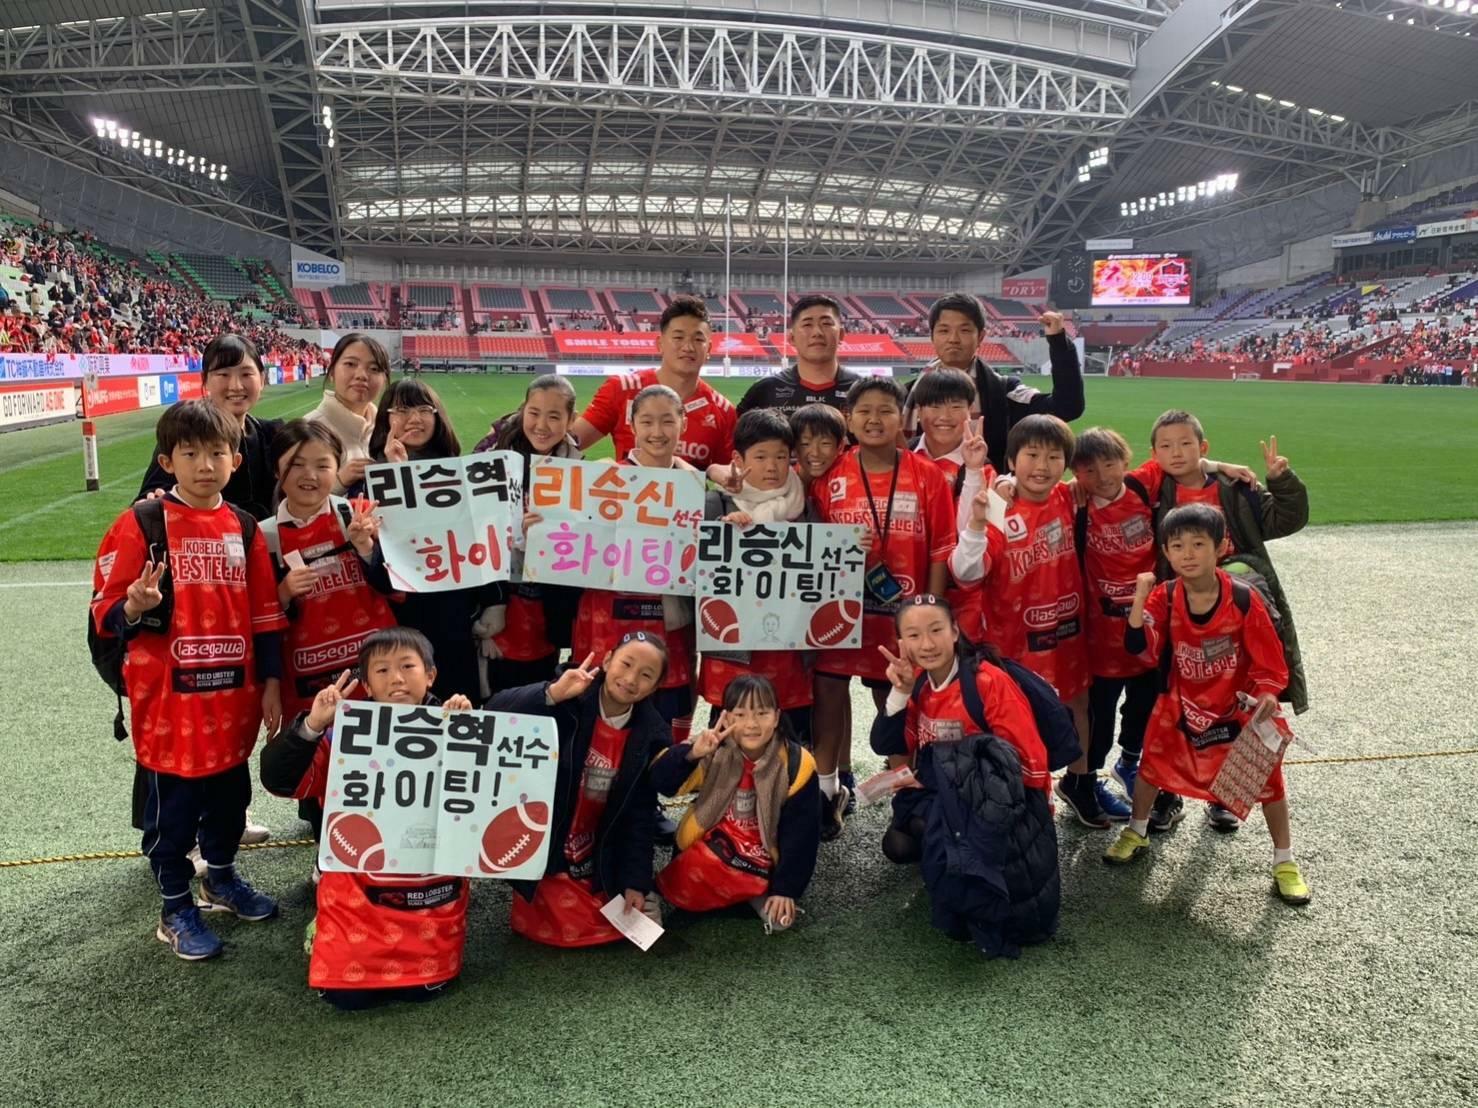 神戸朝鮮の小学生たちは「李承信選手、李承爀選手 ファイト！」とハングルで書いたプラカードで応援（写真提供・李東慶氏）